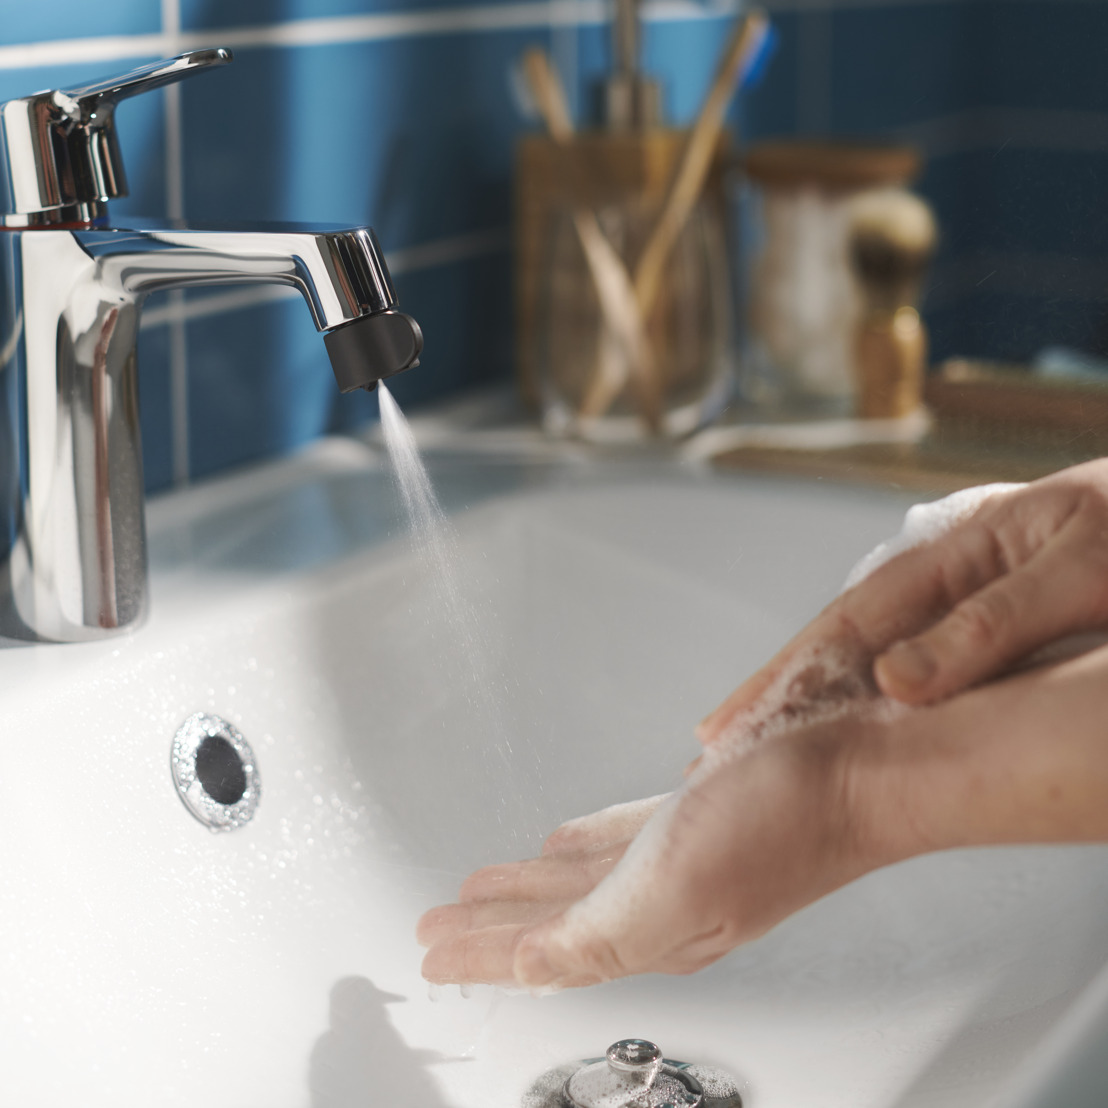 IKEA lance l'embout pour robinet ÅBÄCKEN, une solution pour réduire drastiquement la consommation d’eau à la maison